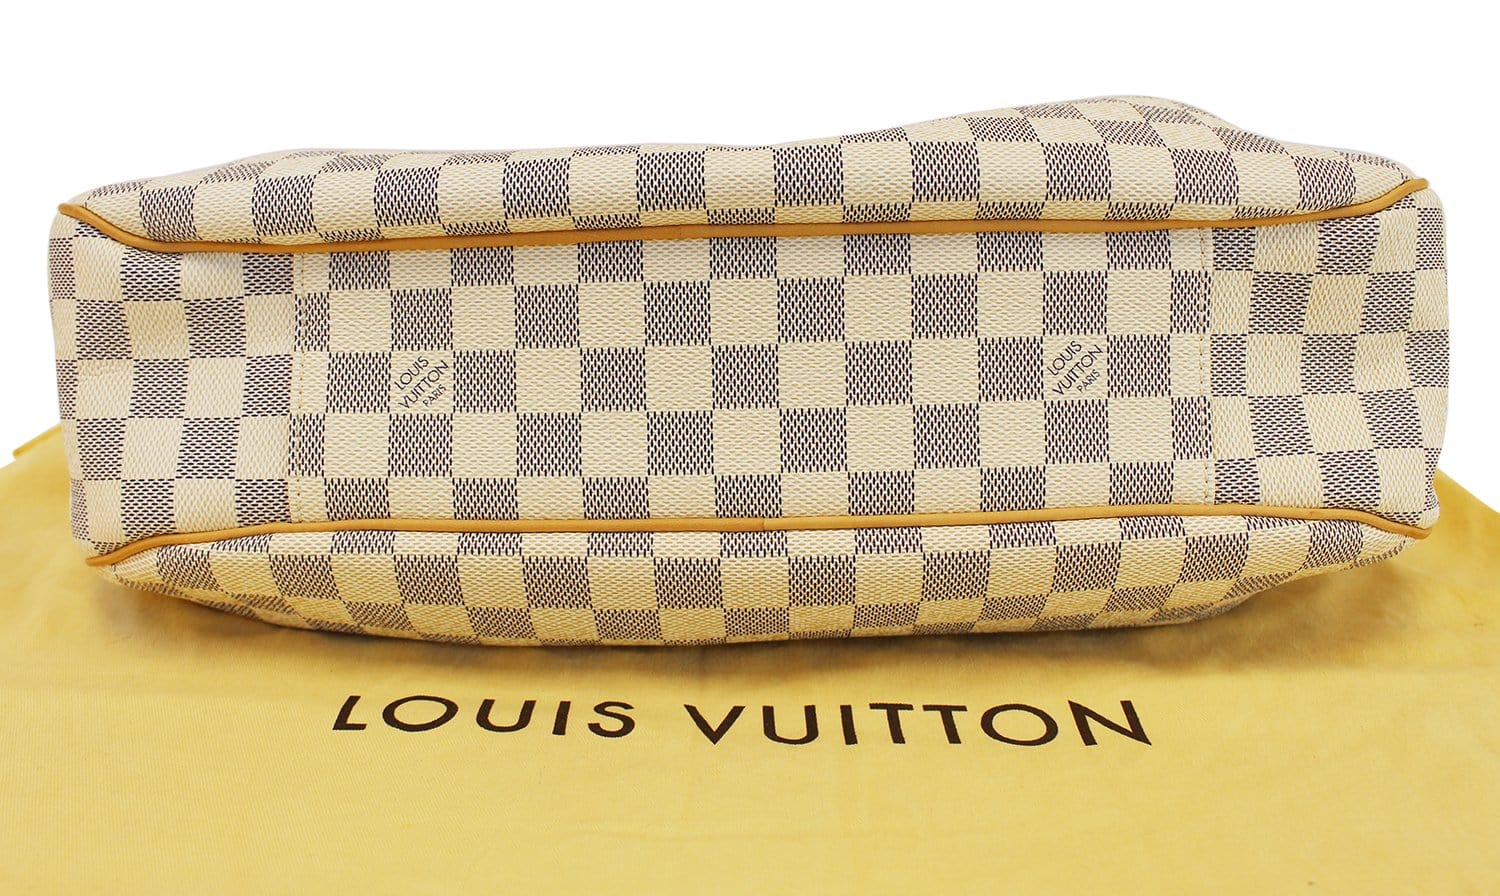 Lot 251 - Louis Vuitton Damier Azur Evora MM